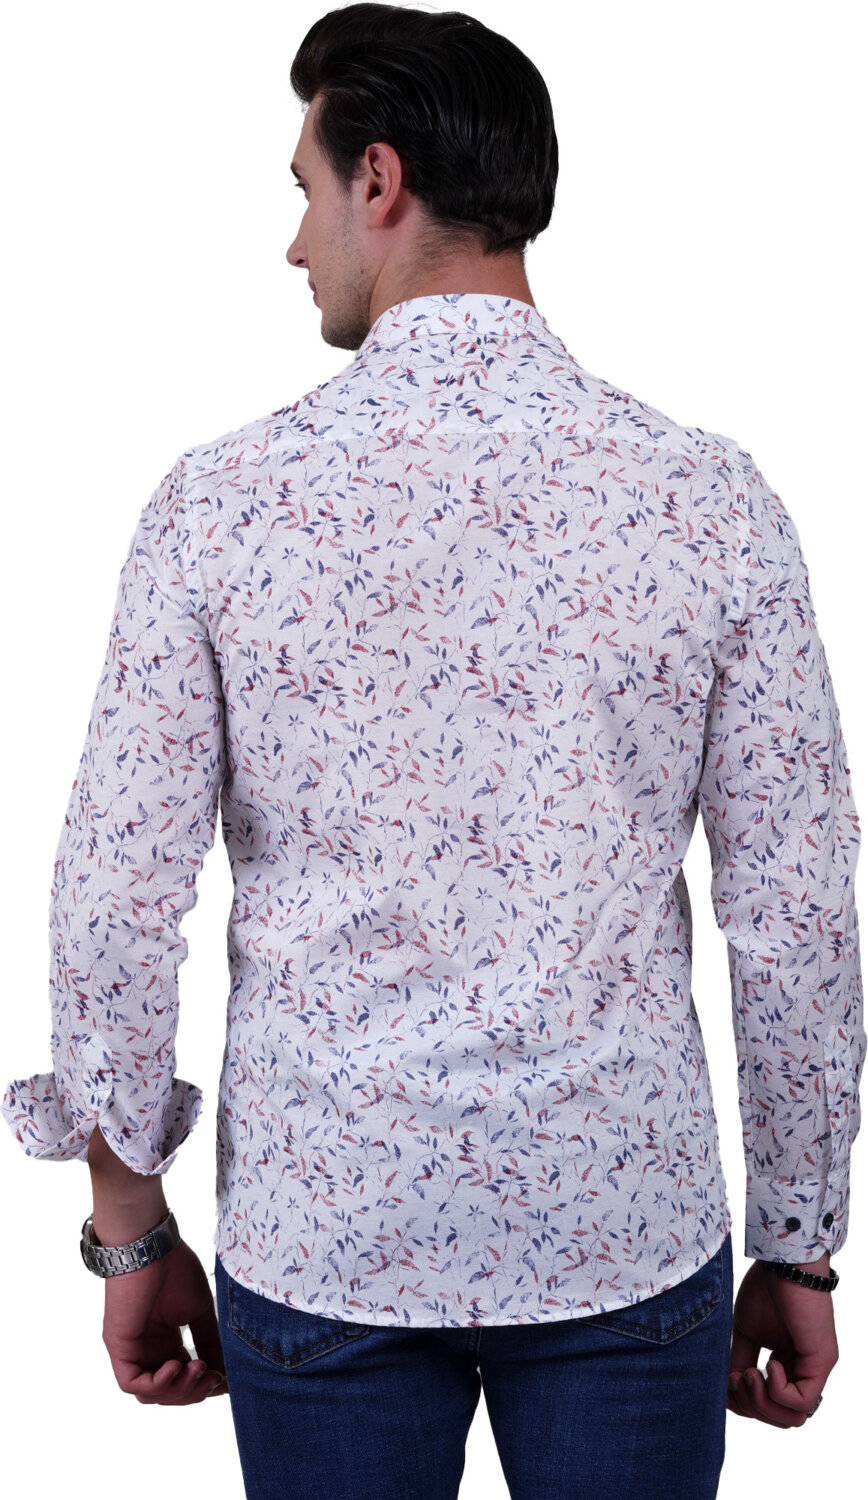 Эксклюзивная белая рубашка для мужчин в тонкую полоску из хлопка с красным на темно-синем листовом принте.